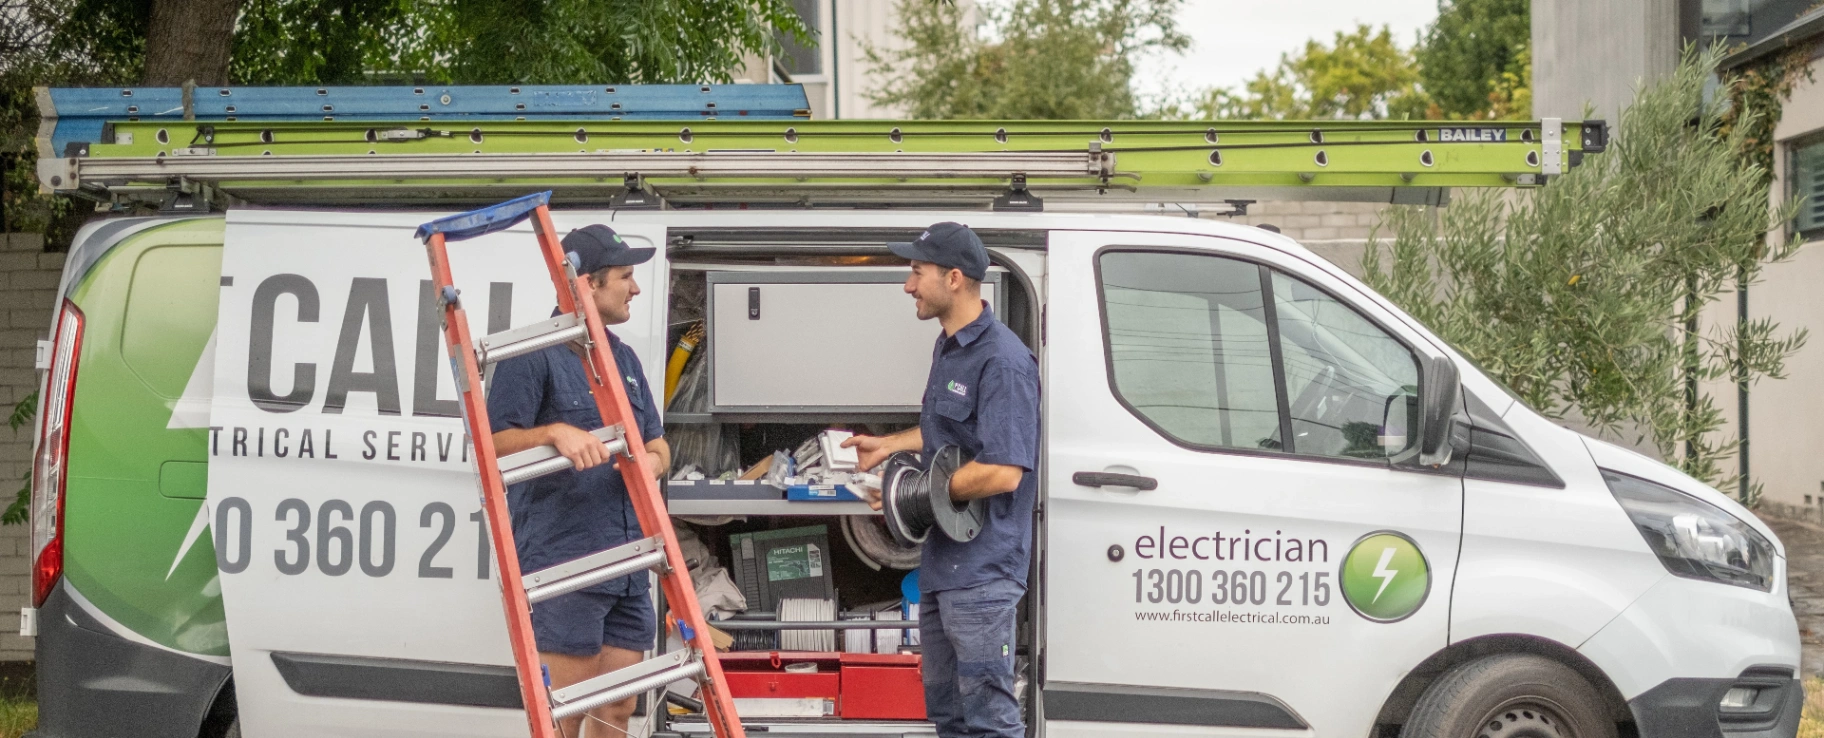 work van with 2 electricians